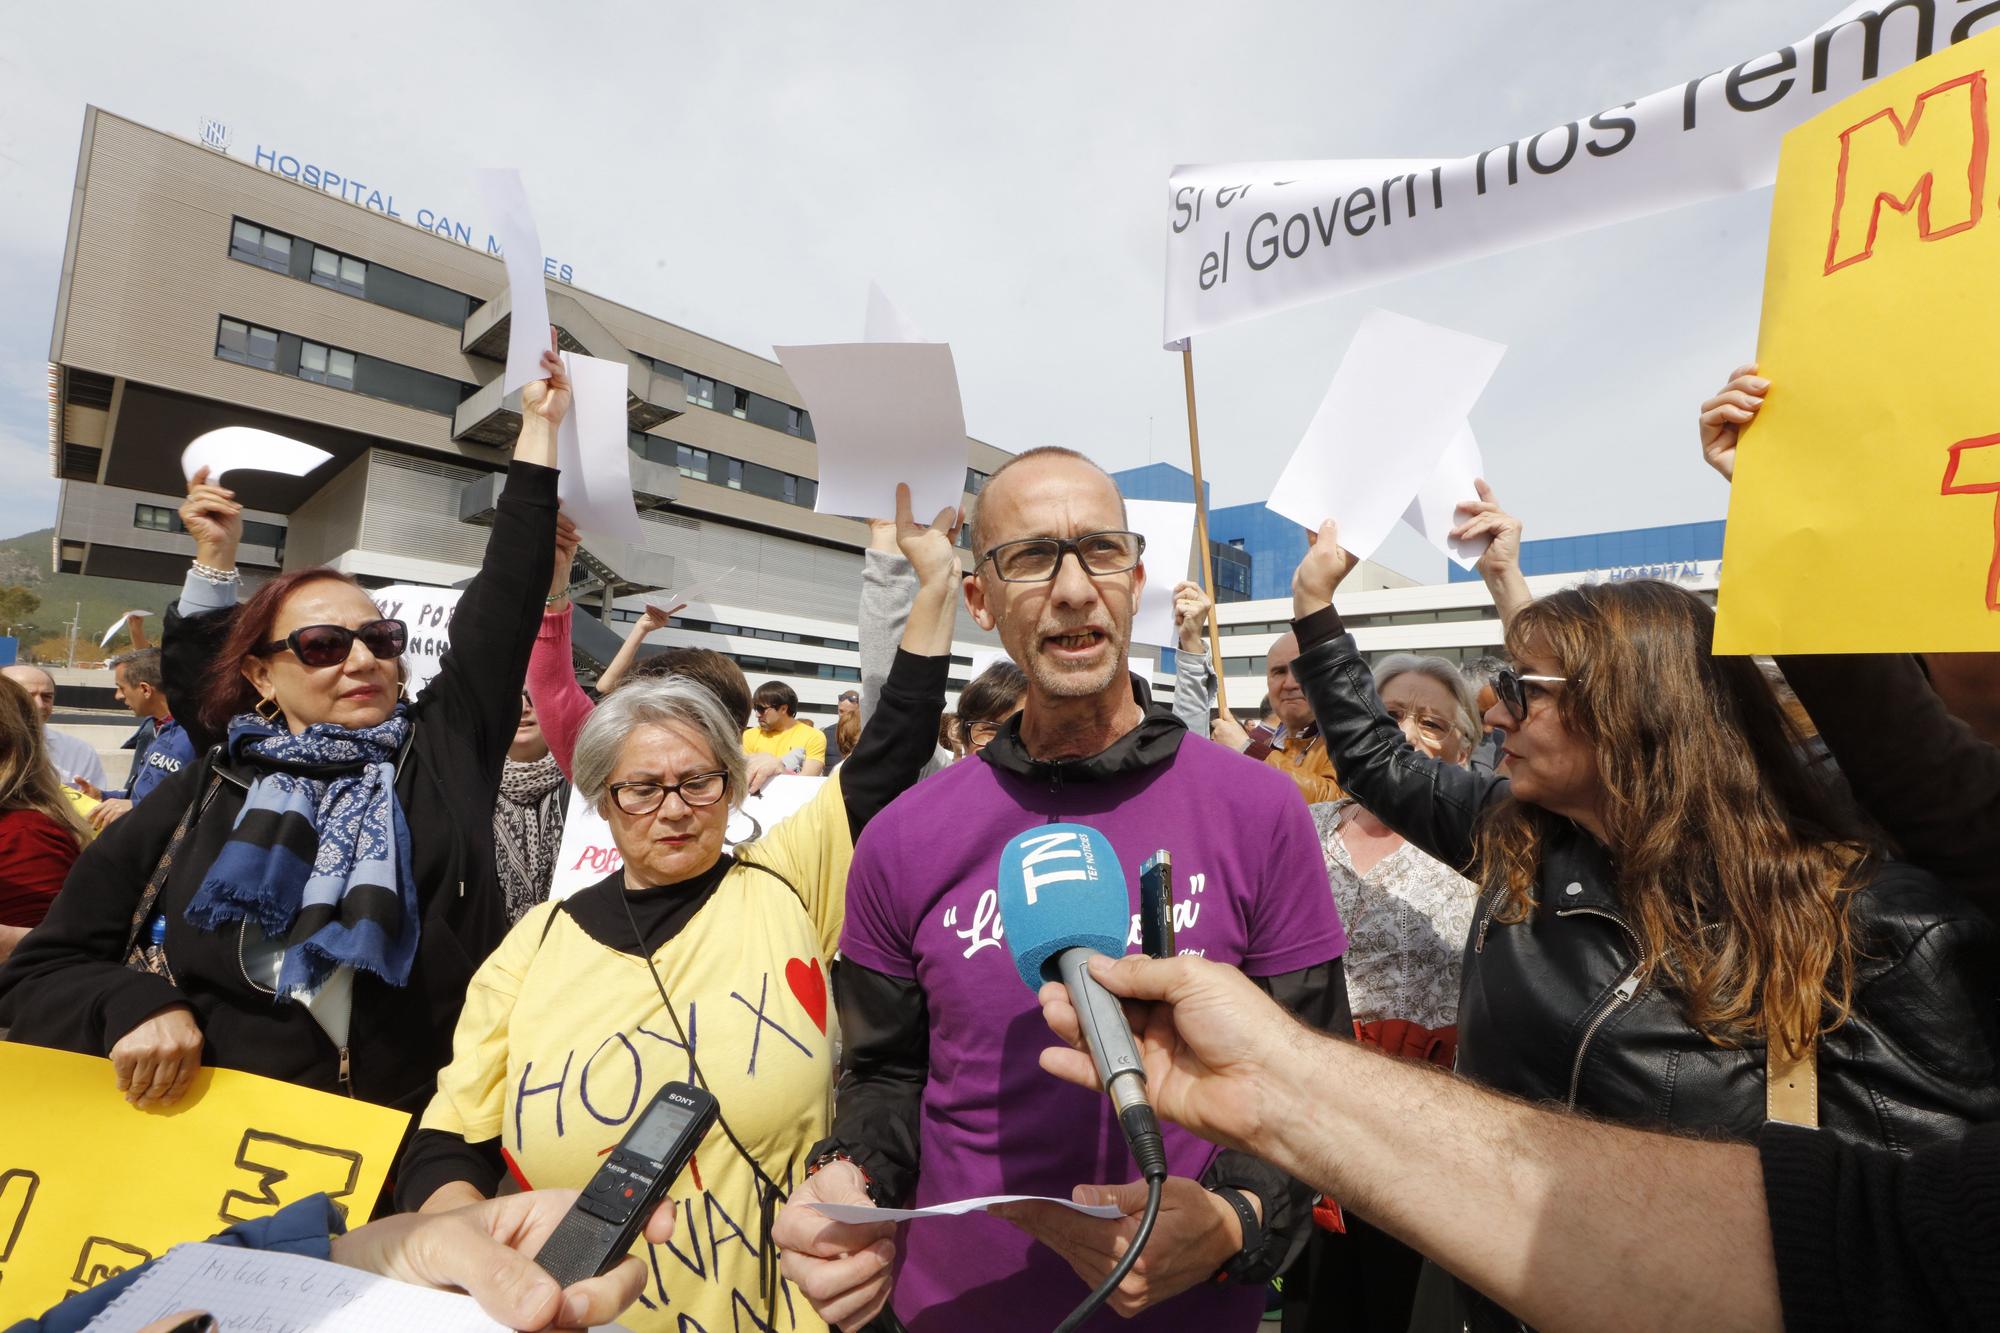 Nueva protesta de los pacientes oncológicos en Ibiza por la falta de médicos: "No vamos a parar"